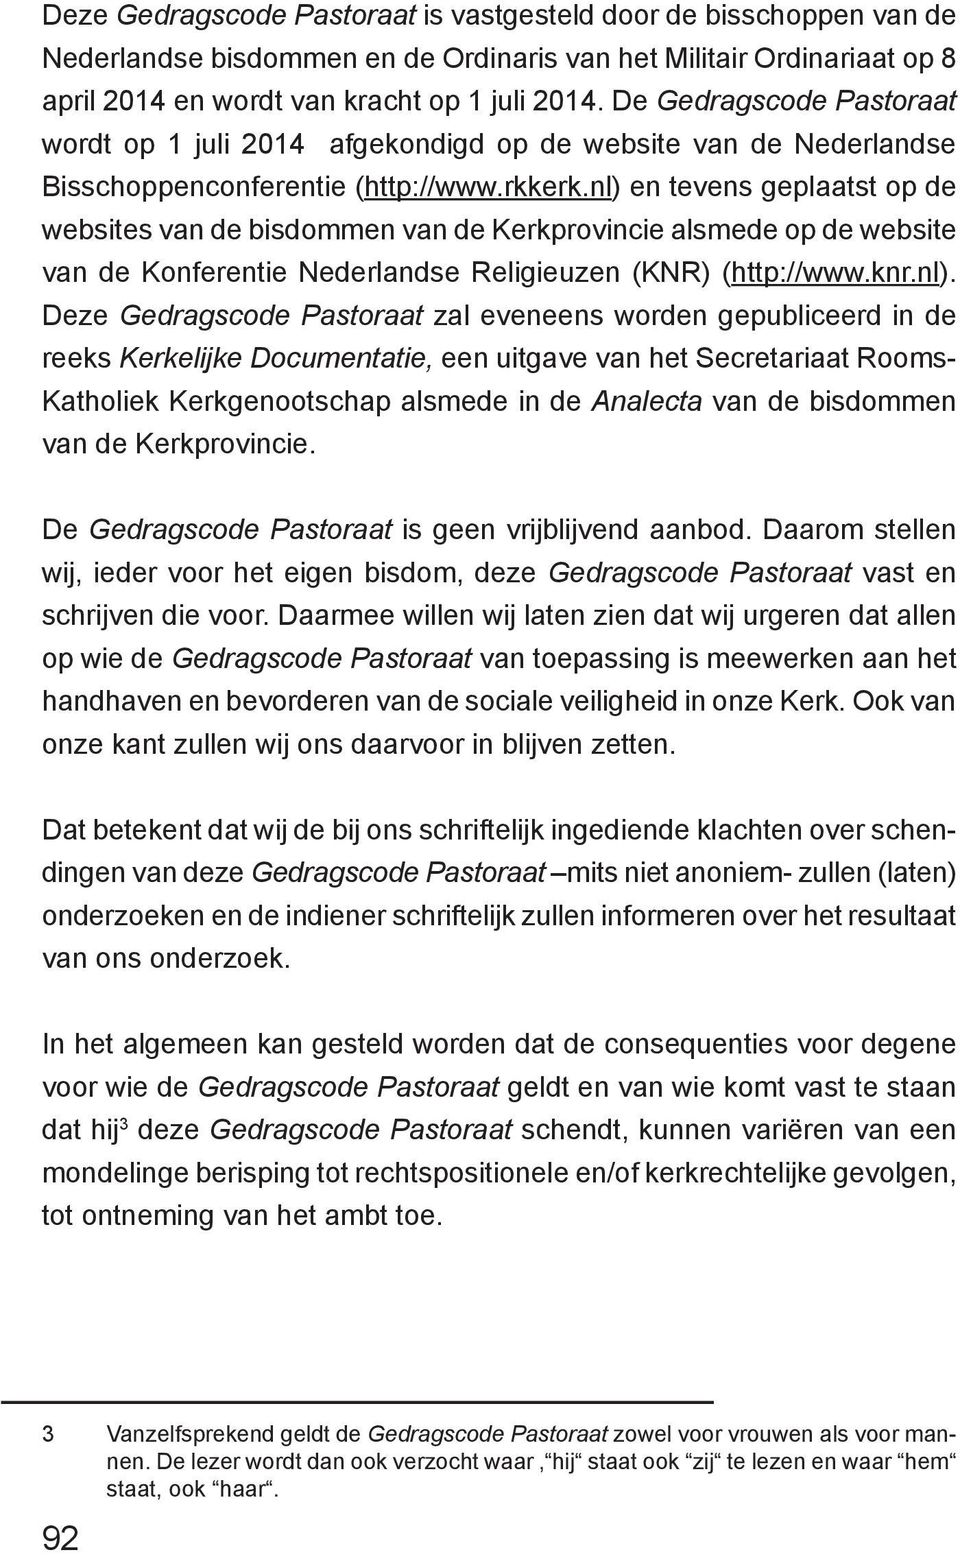 nl) en tevens geplaatst op de websites van de bisdommen van de Kerkprovincie alsmede op de website van de Konferentie Nederlandse Religieuzen (KNR) (http://www.knr.nl). Deze Gedragscode Pastoraat zal